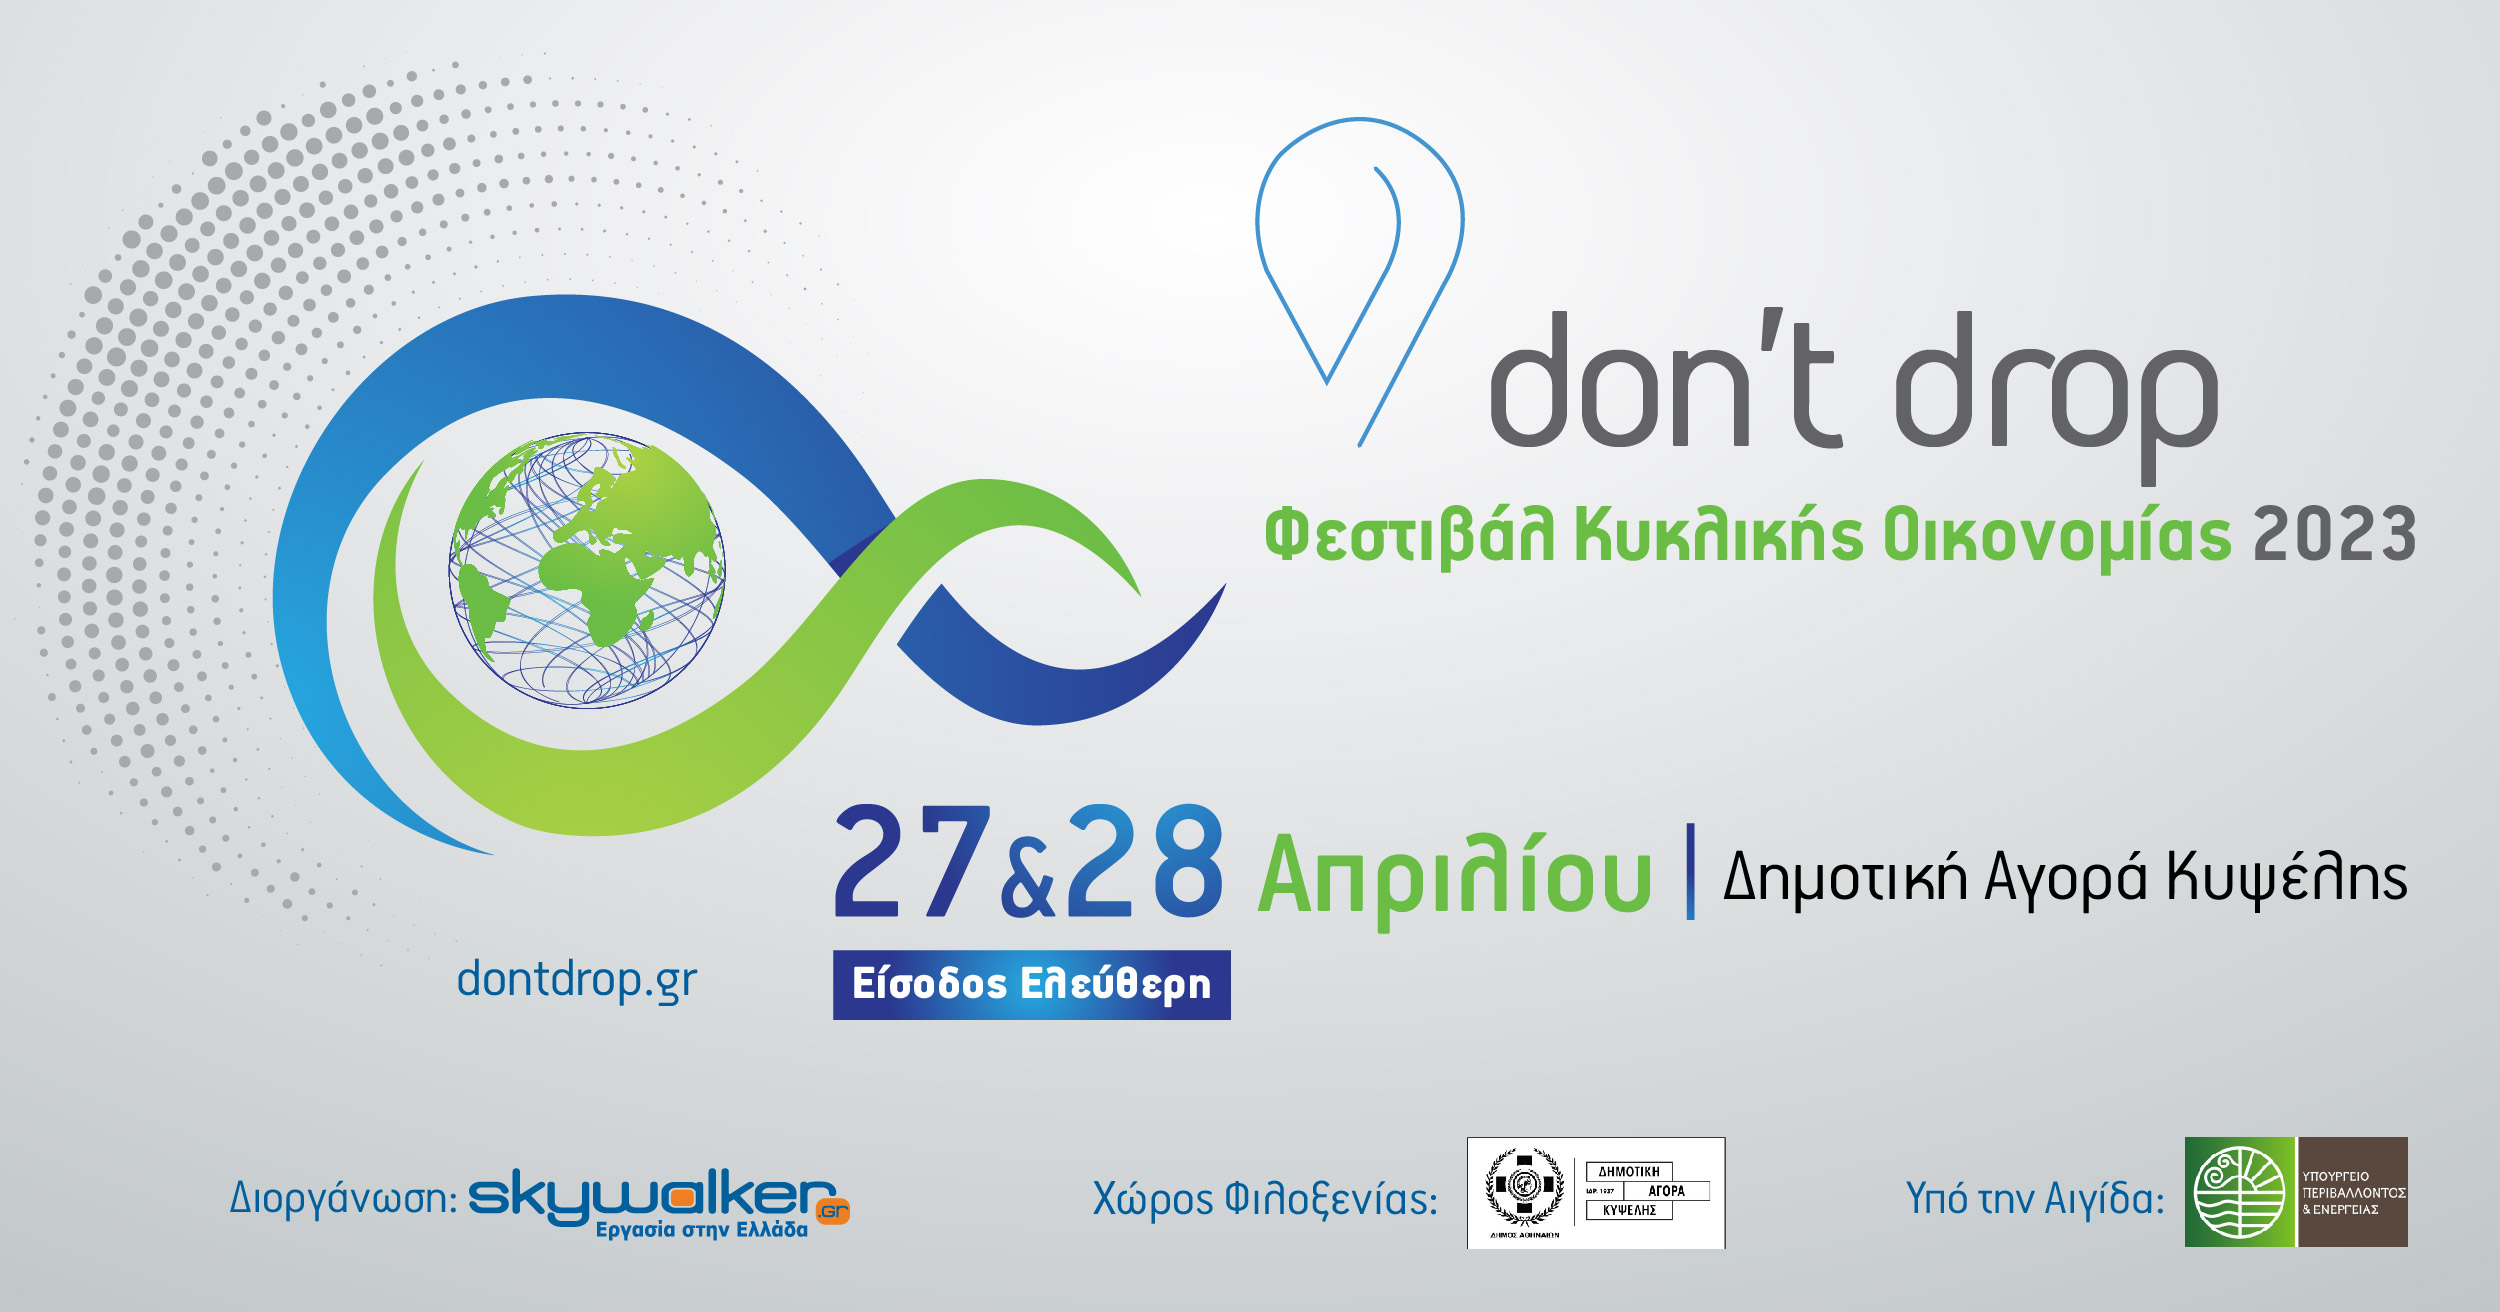 Don't Drop: Φεστιβάλ Κυκλικής Οικονομίας 2023 στις 27 και 28 Απριλίου